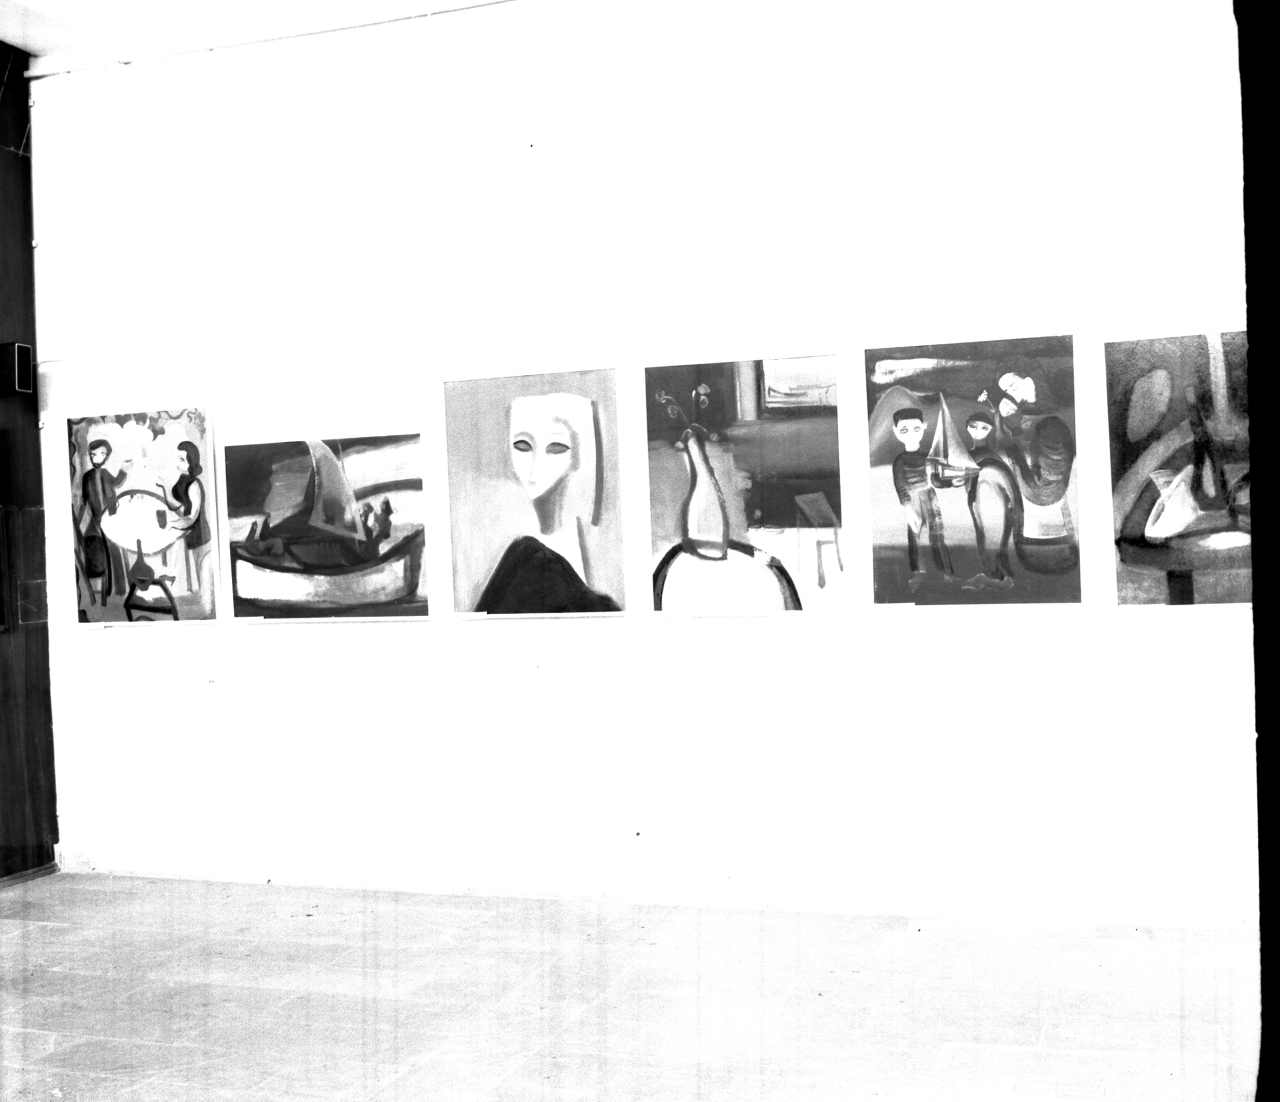 «Ժակ Իհմալյանի ստեղծագործությունների» և «Արևելքի ժողովուրդների դեկորատիվ-կիրառական արվեստը» ժամանակավոր ցուցահանդեսի նմուշներից